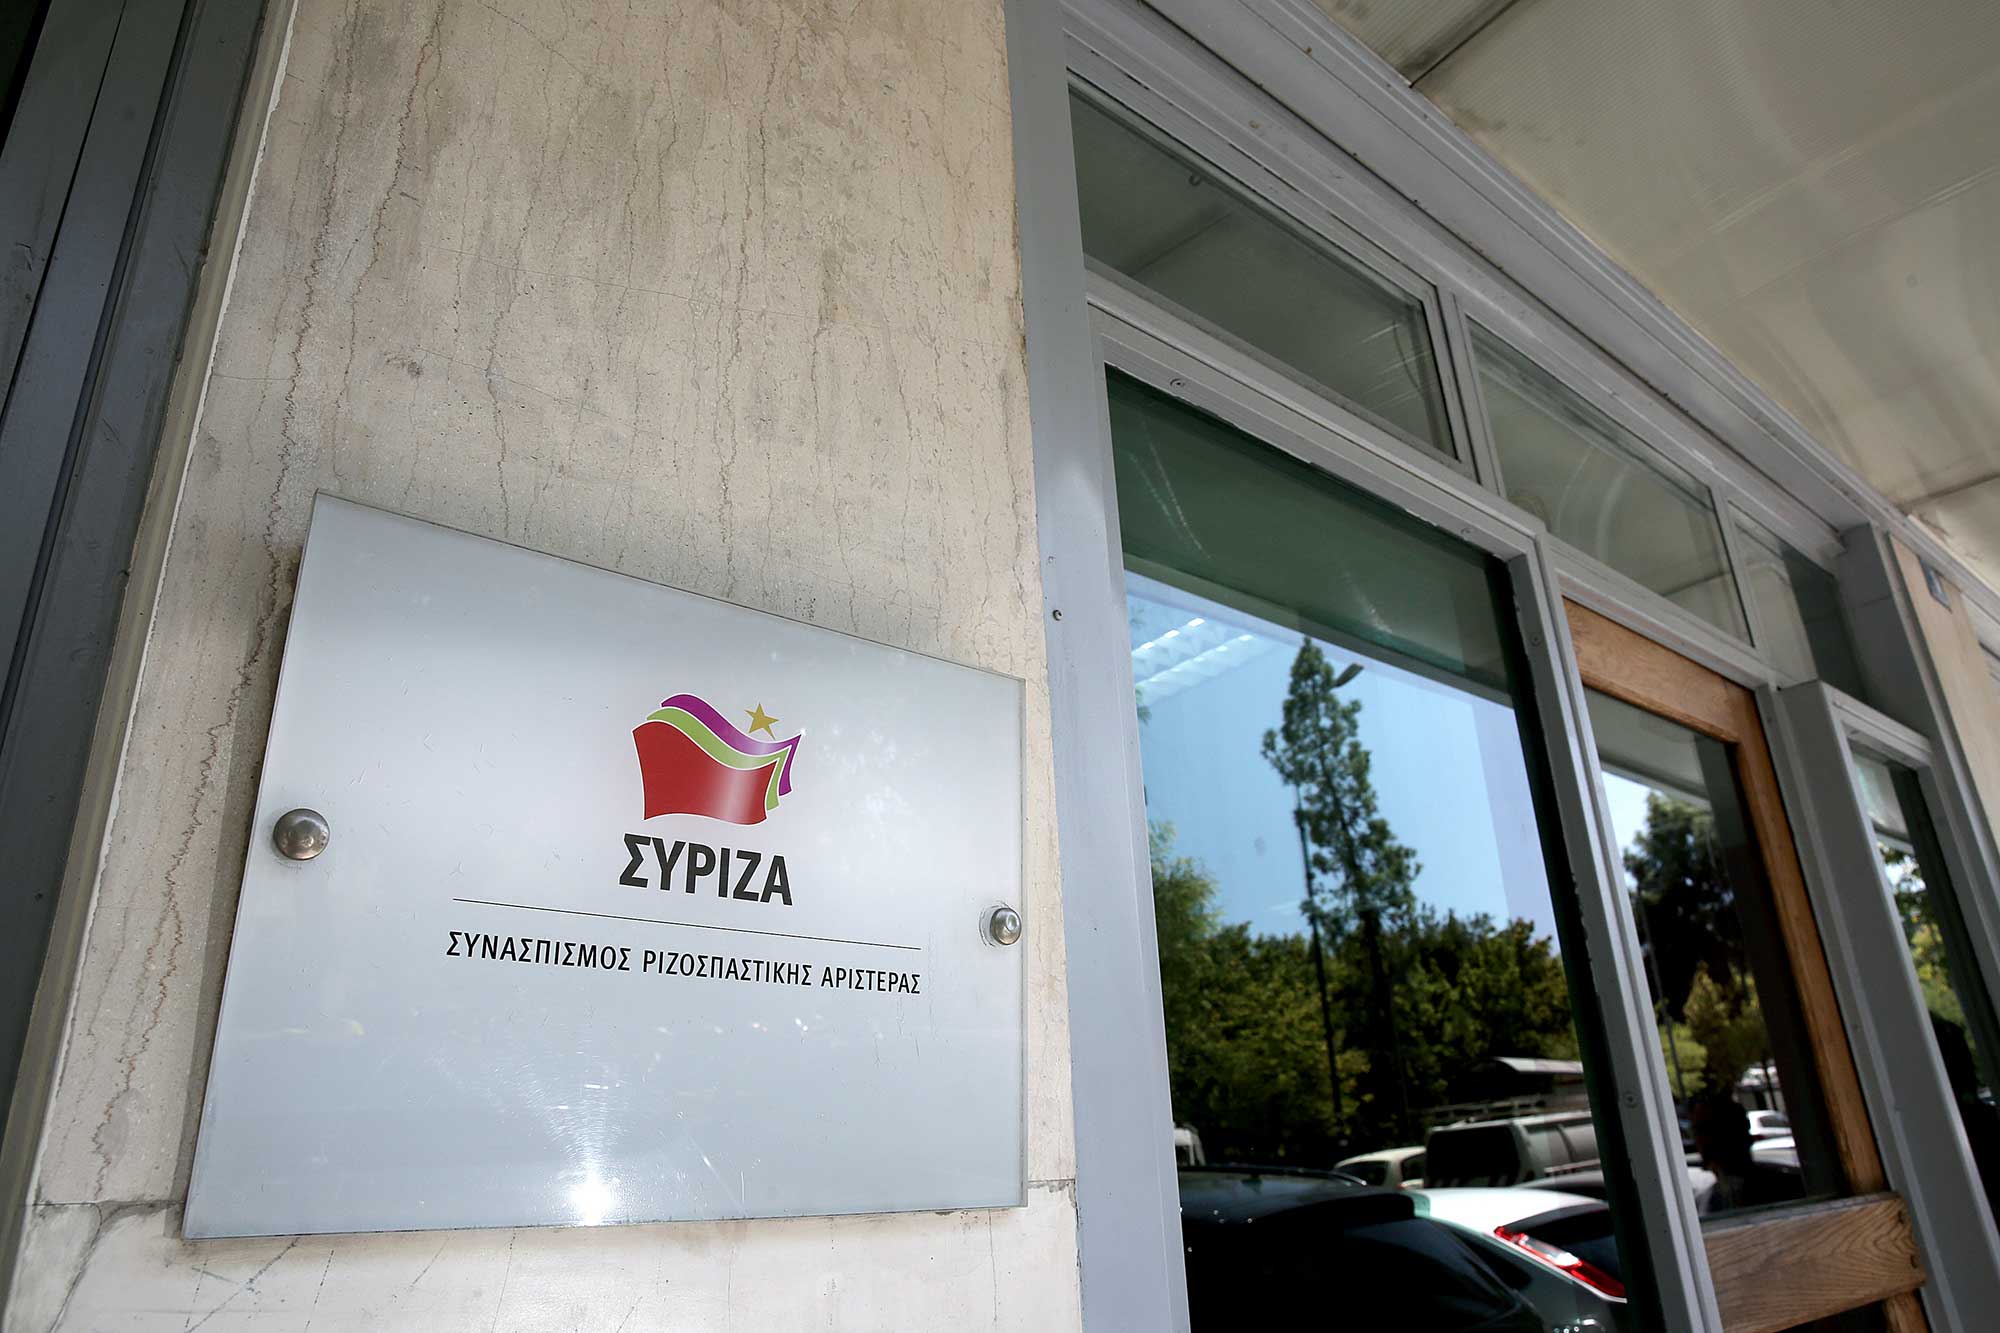 ΣΥΡΙΖΑ – ΠΣ: Τα έργα και οι ημέρες Μητσοτάκη στην ΕΡΤ, υπόδειγμα αναξιοκρατίας και χειραγώγησης